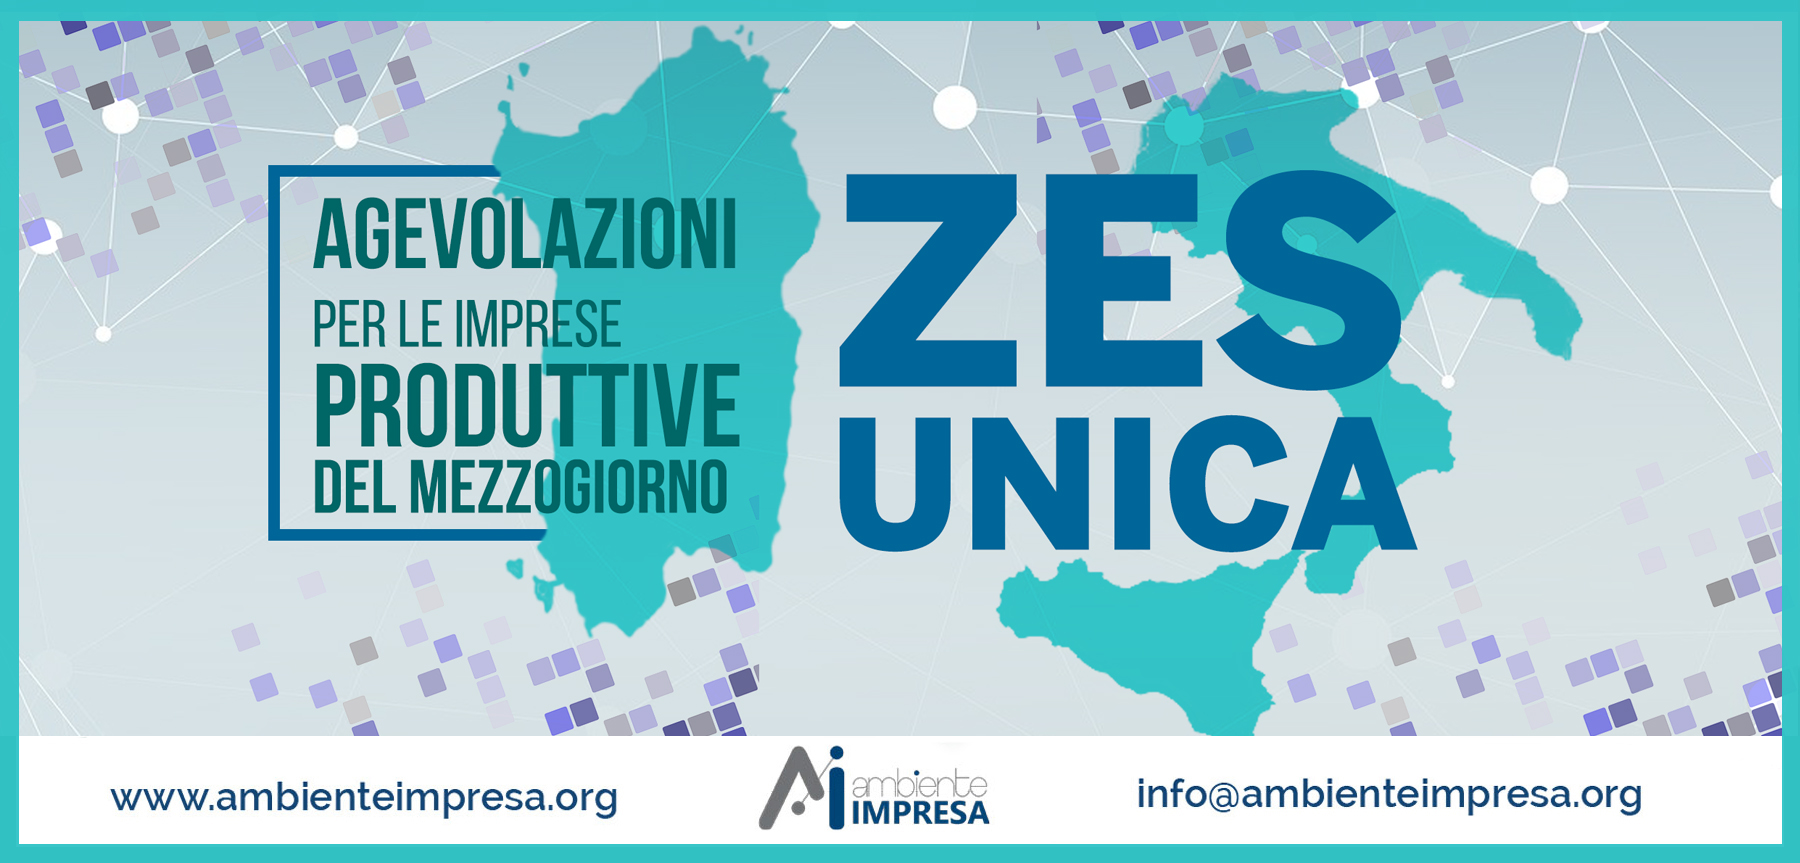 Zes UNICA - Agevolazioni per le Imprese produttive del mezzogiorno  - Ambiente Impresa srl - Cagliari